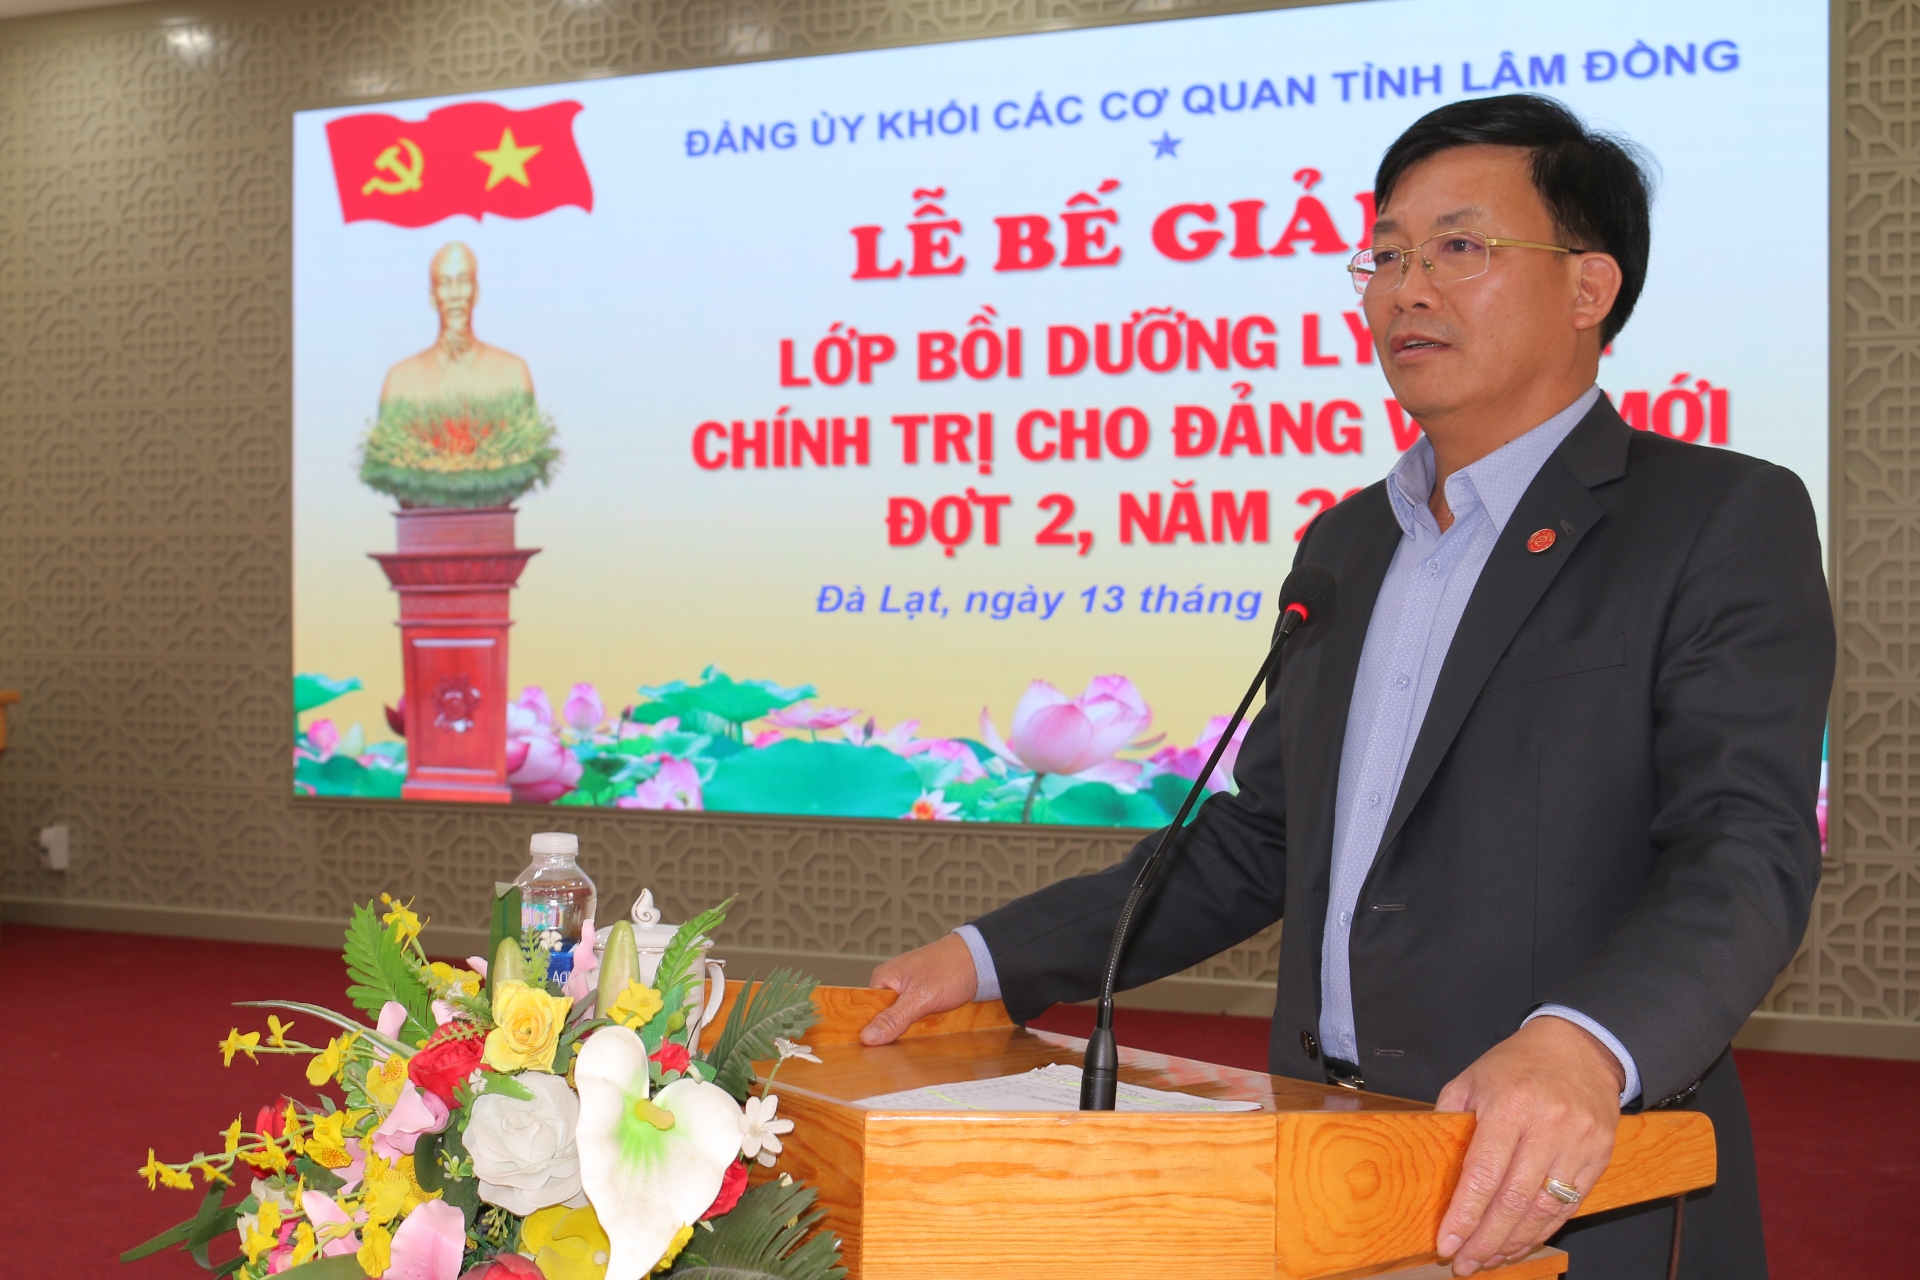 Đồng chí Hoàng Thanh Hải – Bí thư Đảng ủy Khối các cơ quan tỉnh phát biểu tại lễ bế giảng

